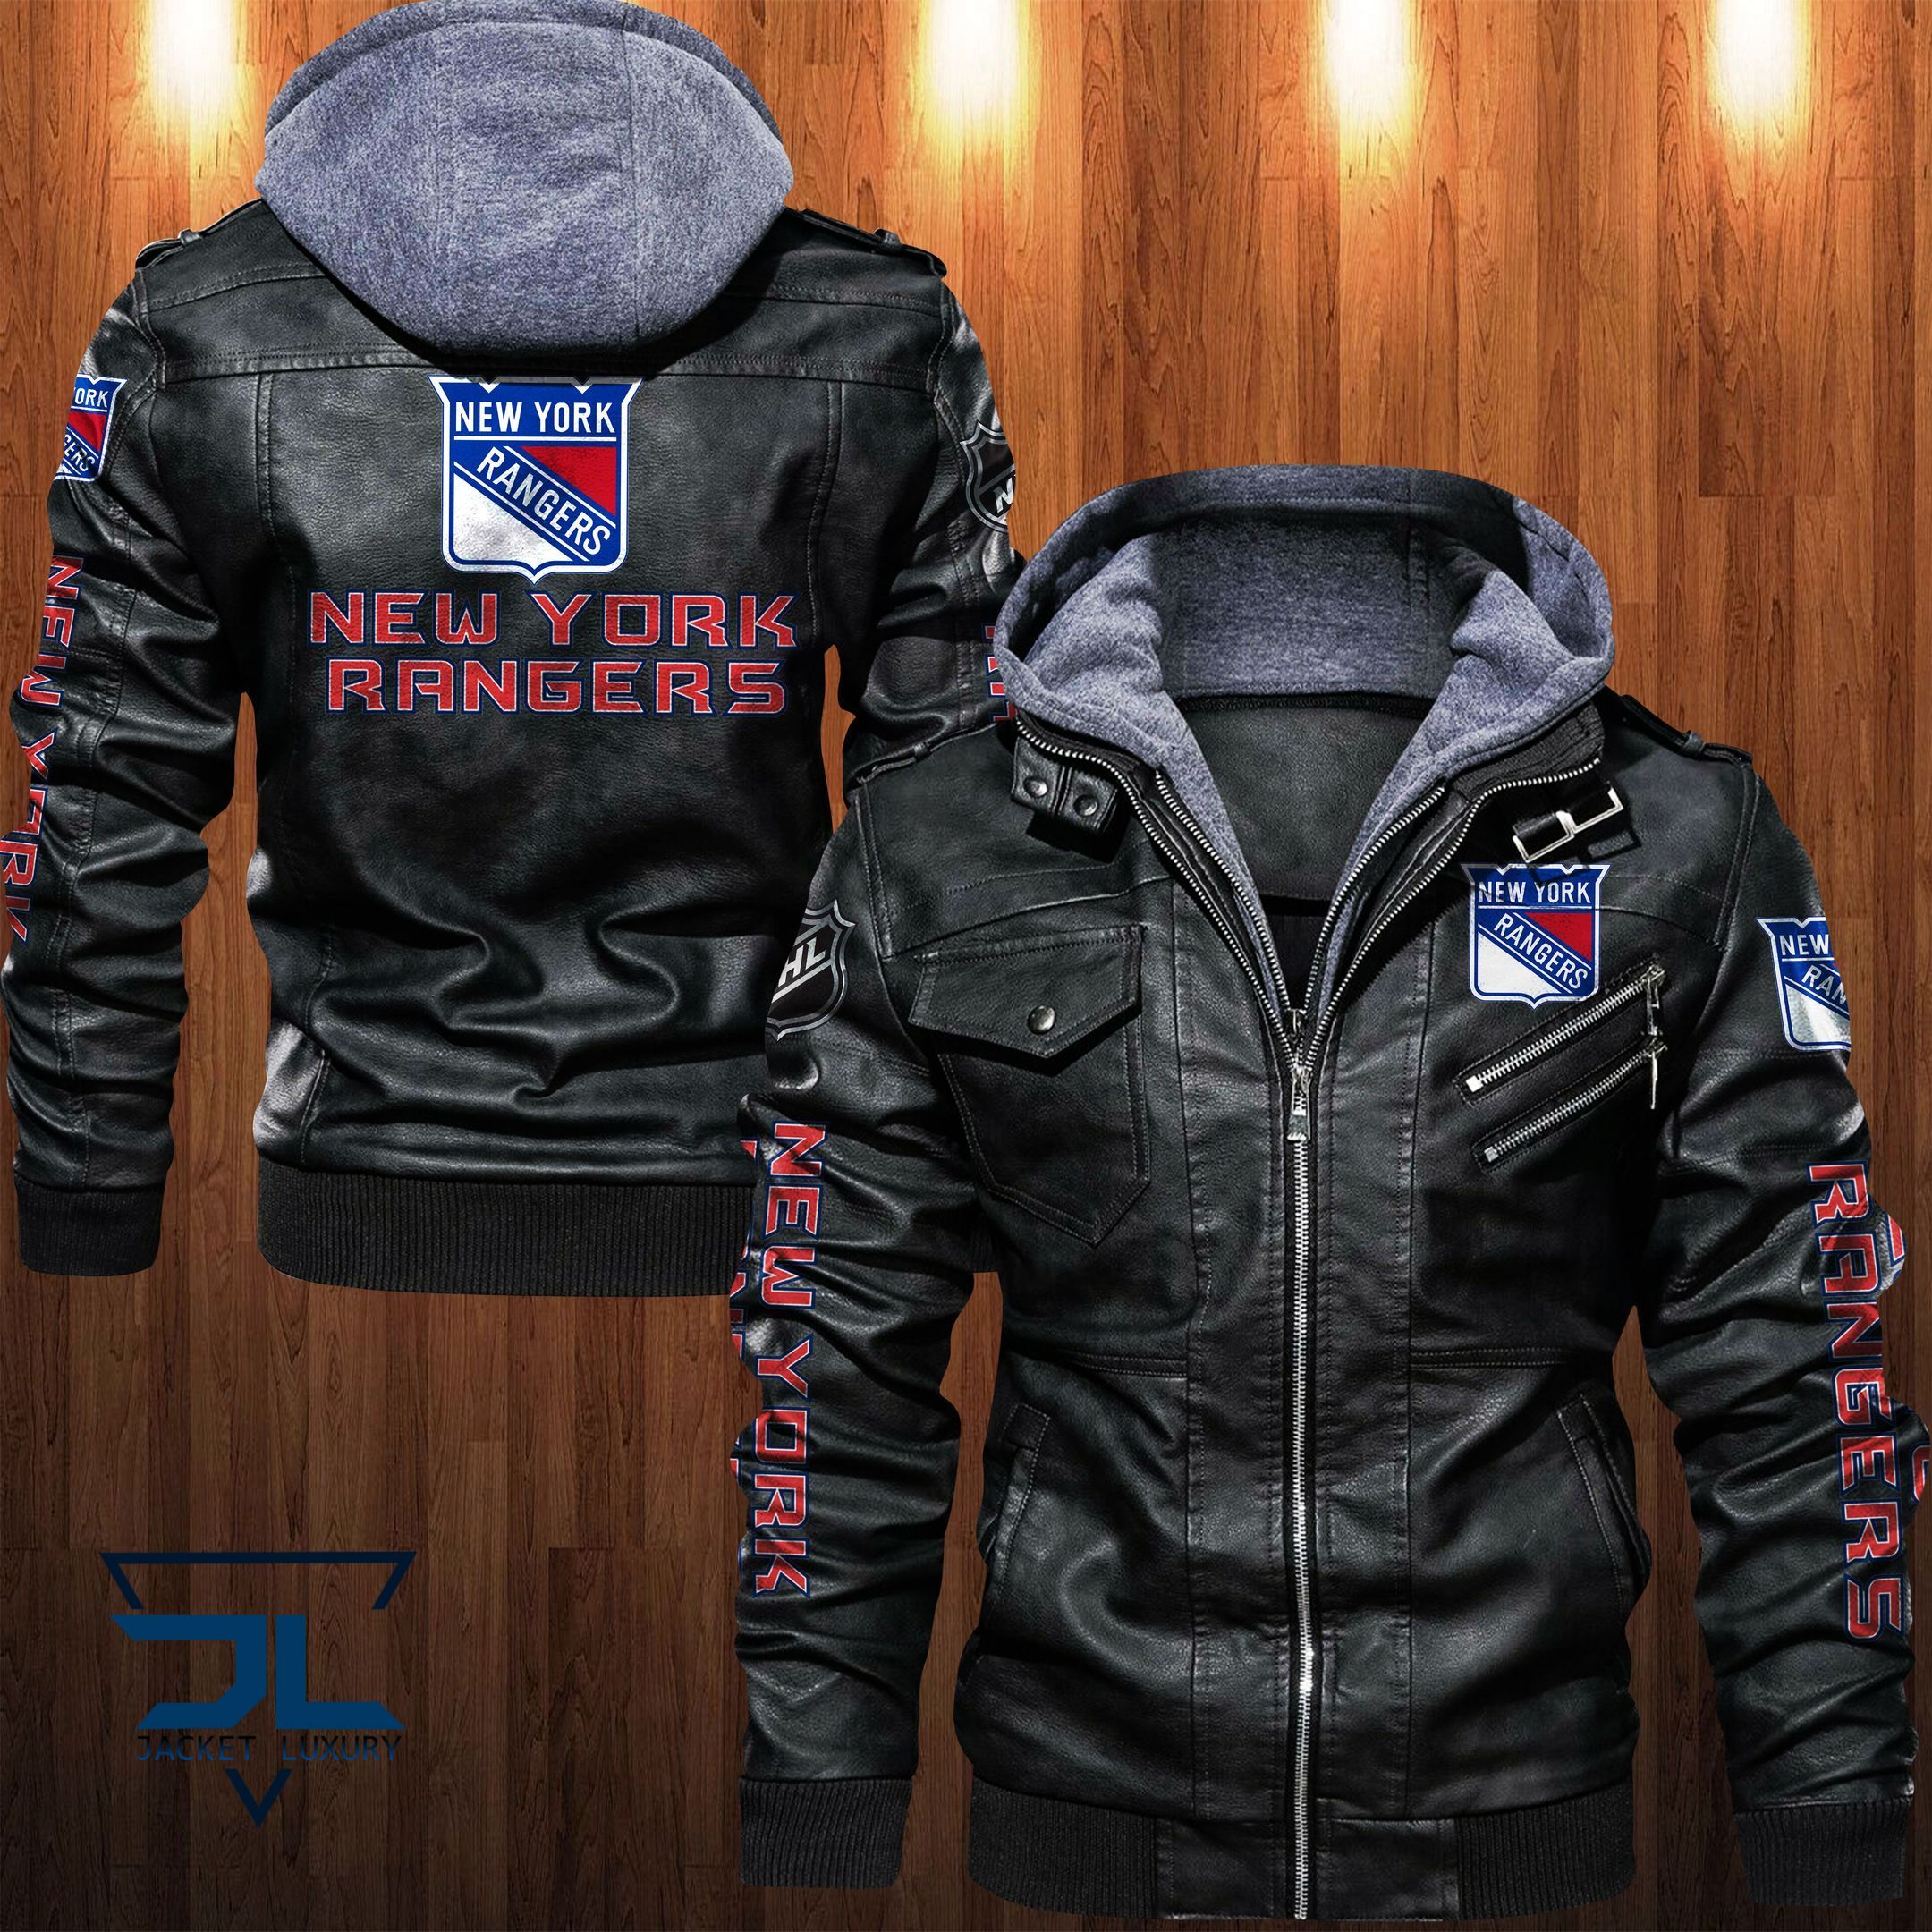 Get the best jackets under $100! 361